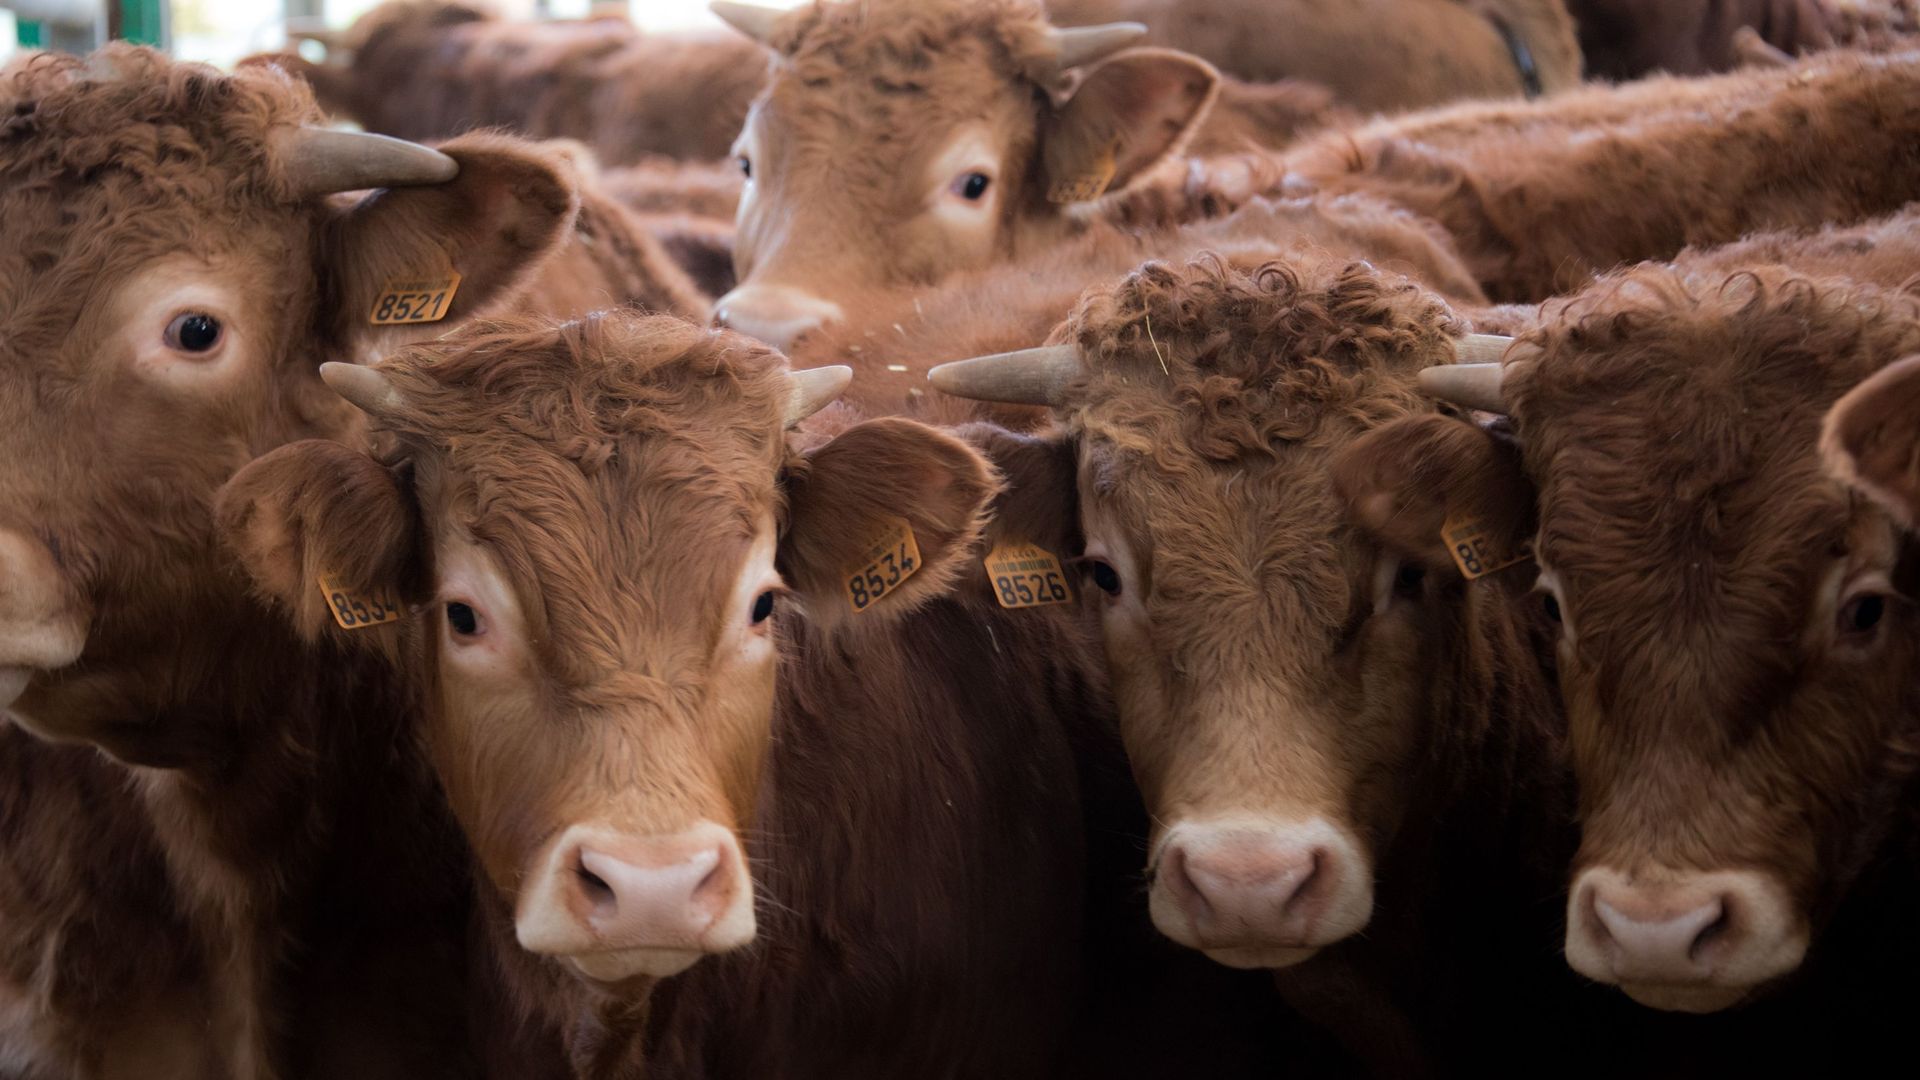 Des vaches du Limousin dans leur étable, le 17 décembre 2015 à Arras en France